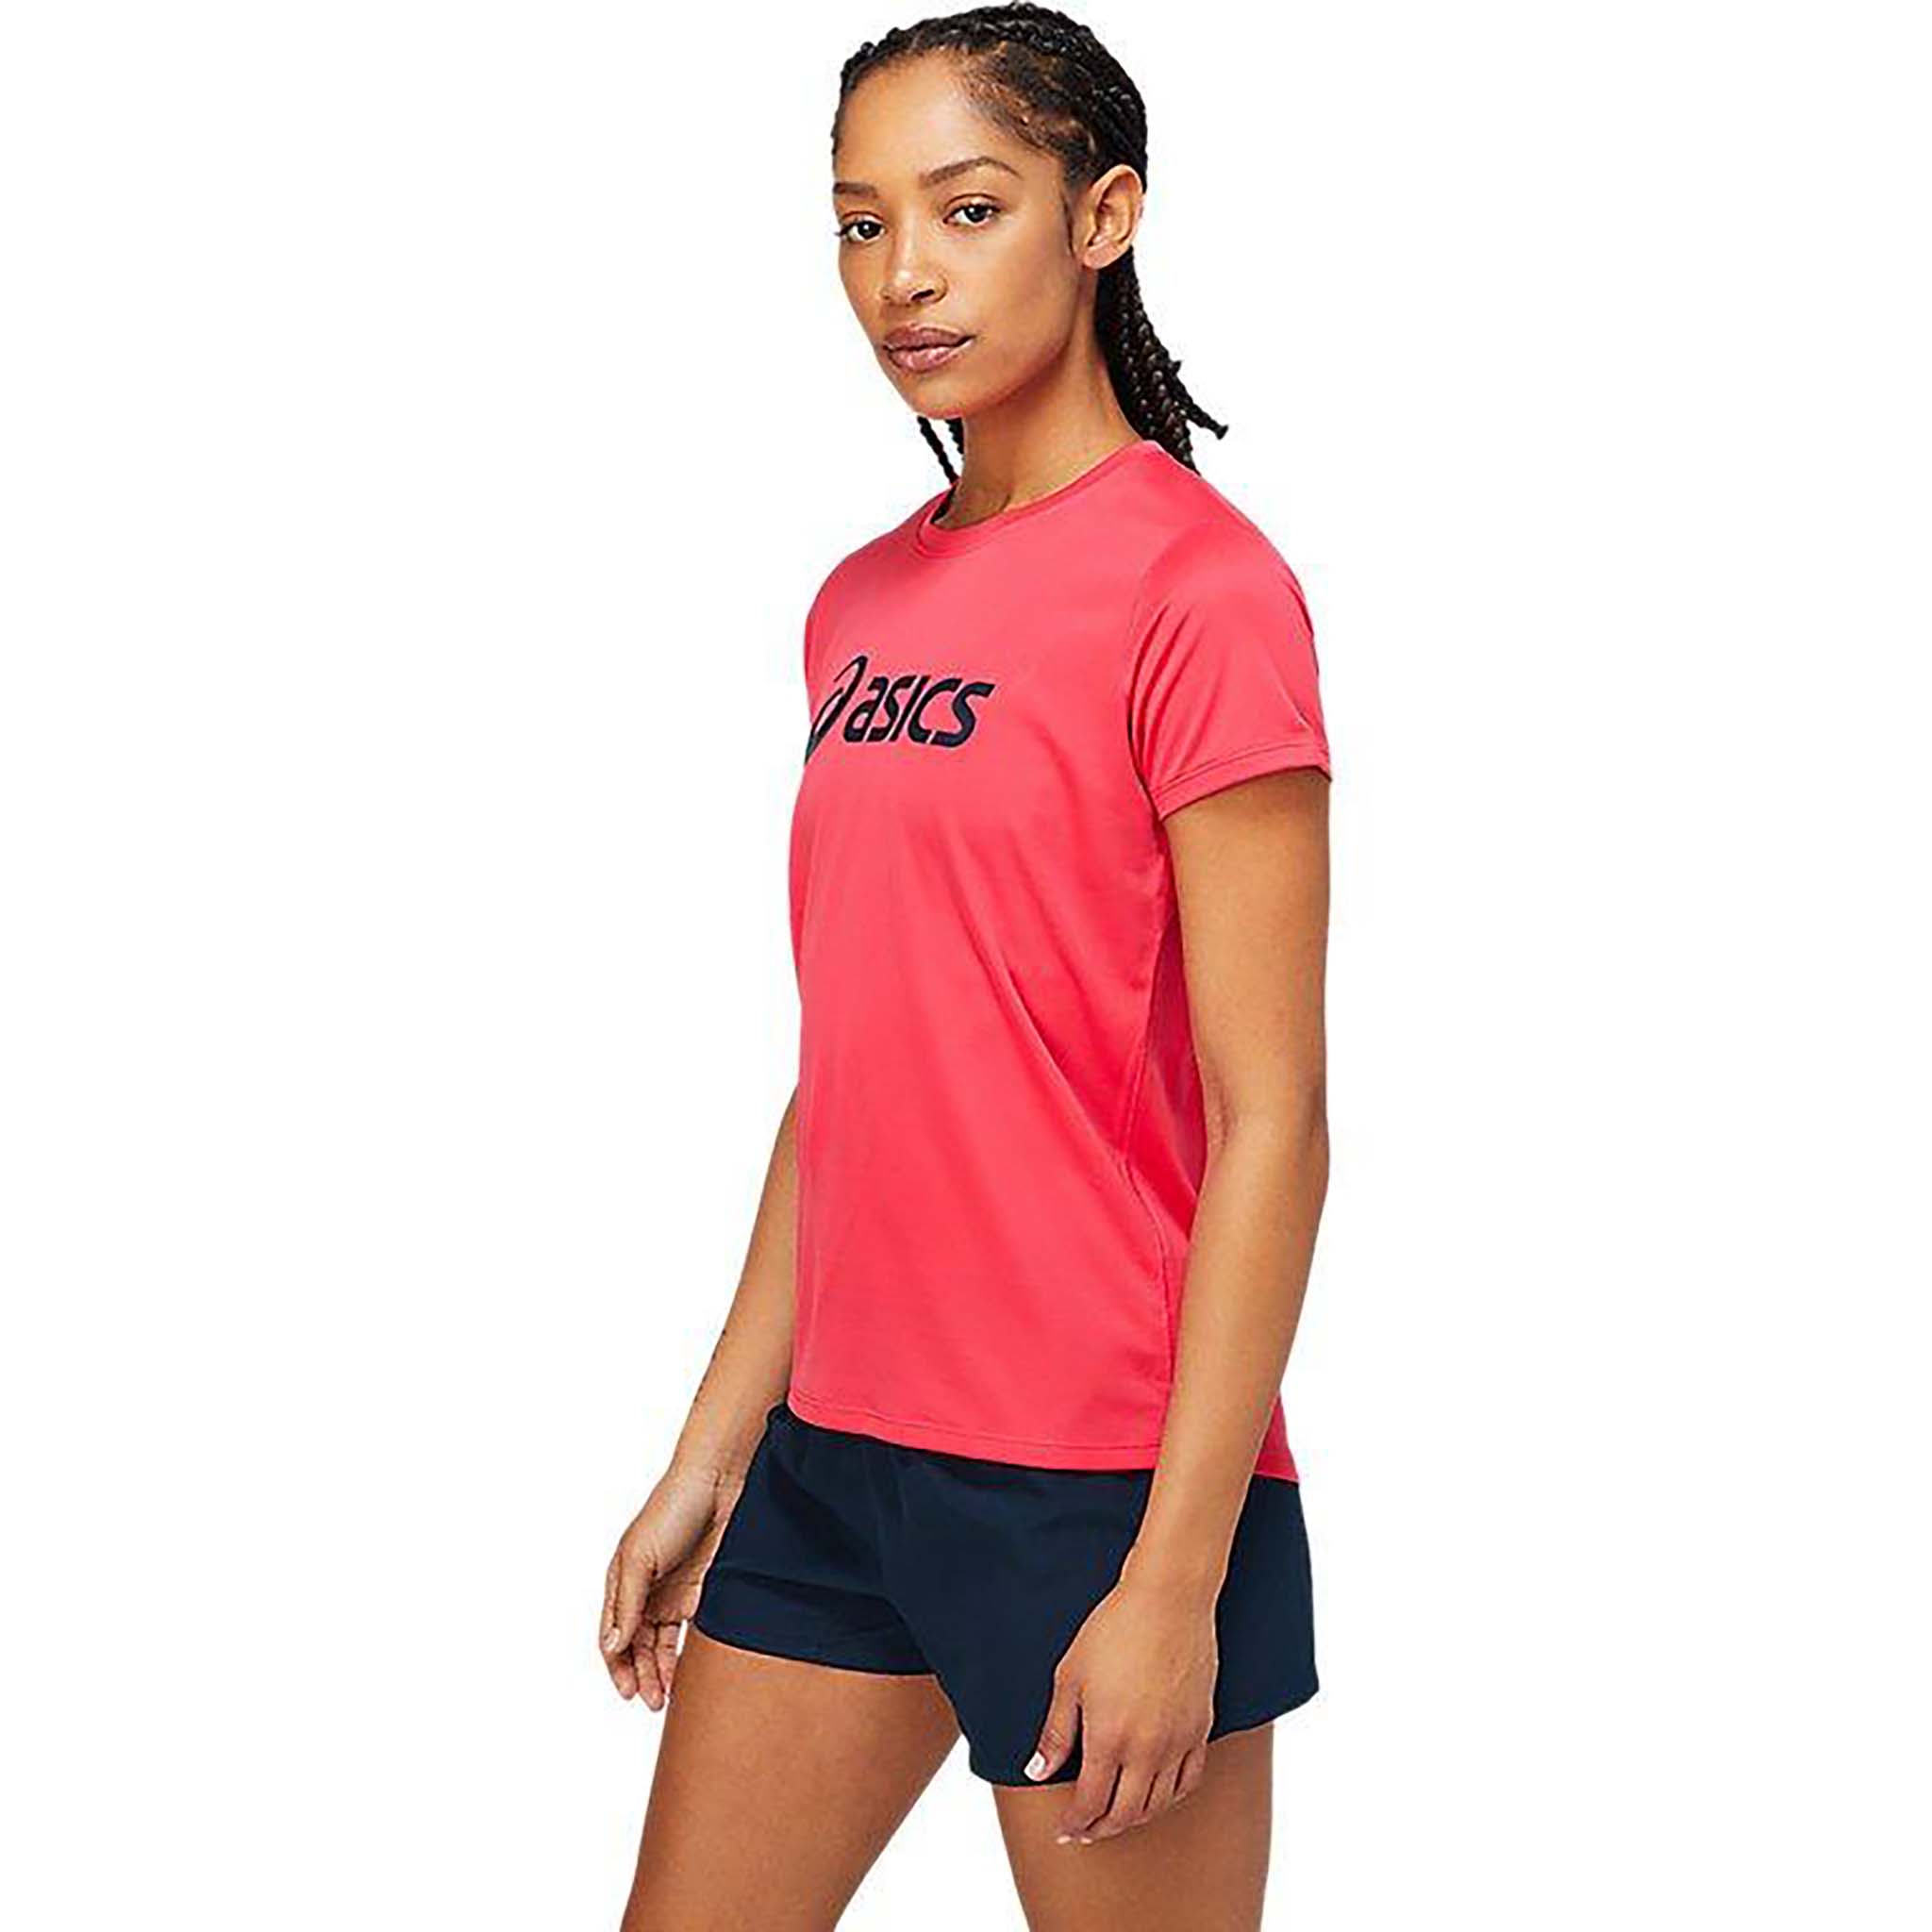 ASICS Silver short sleeve running t-shirt for women – Soccer Sport Fitness